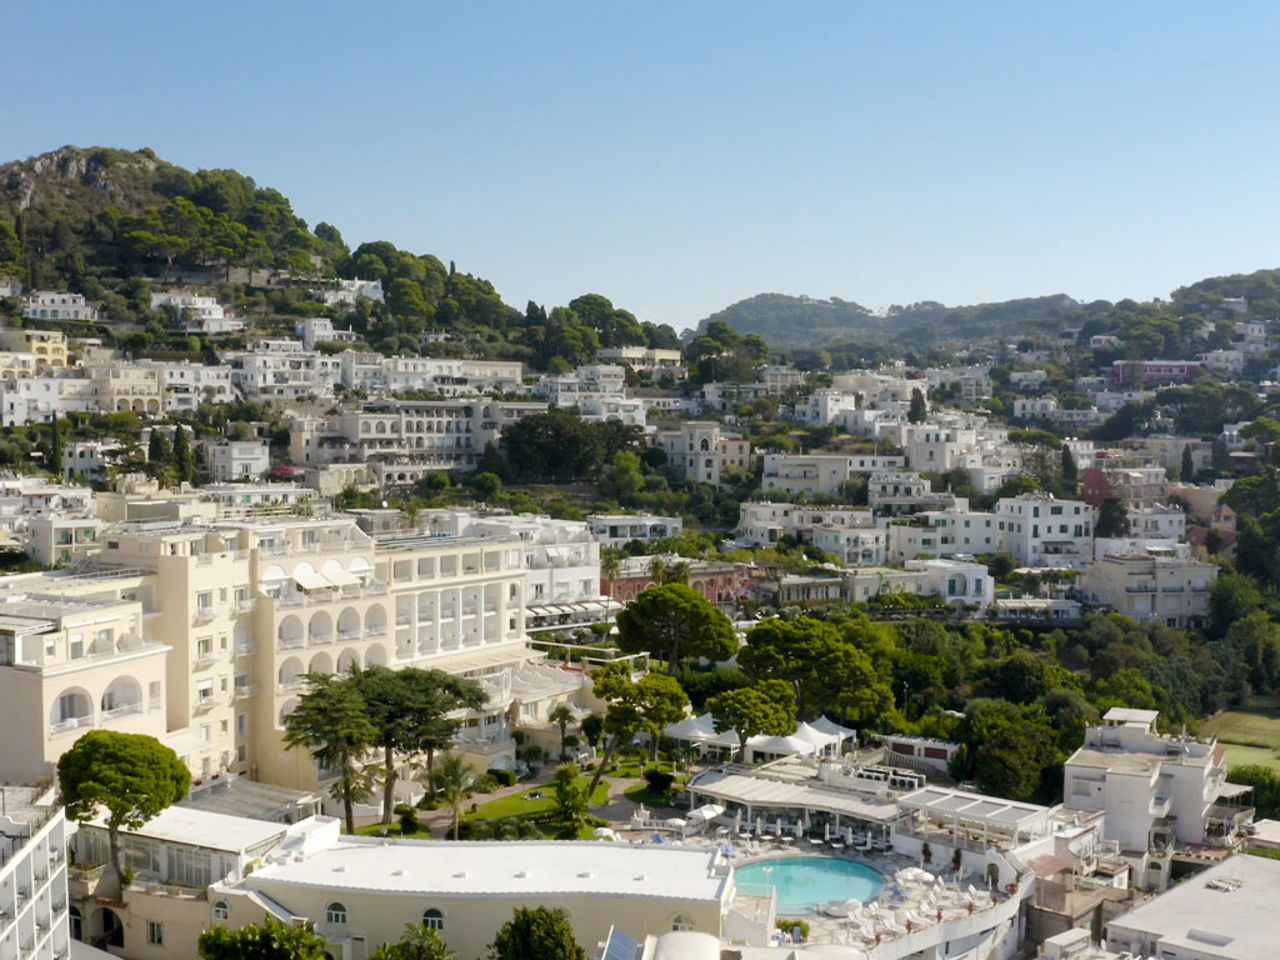 Riapre a Capri per la nuova stagione il grand hotel Quisisana, l’albergo ospita le riprese di un’importante produzione cinematografica americana